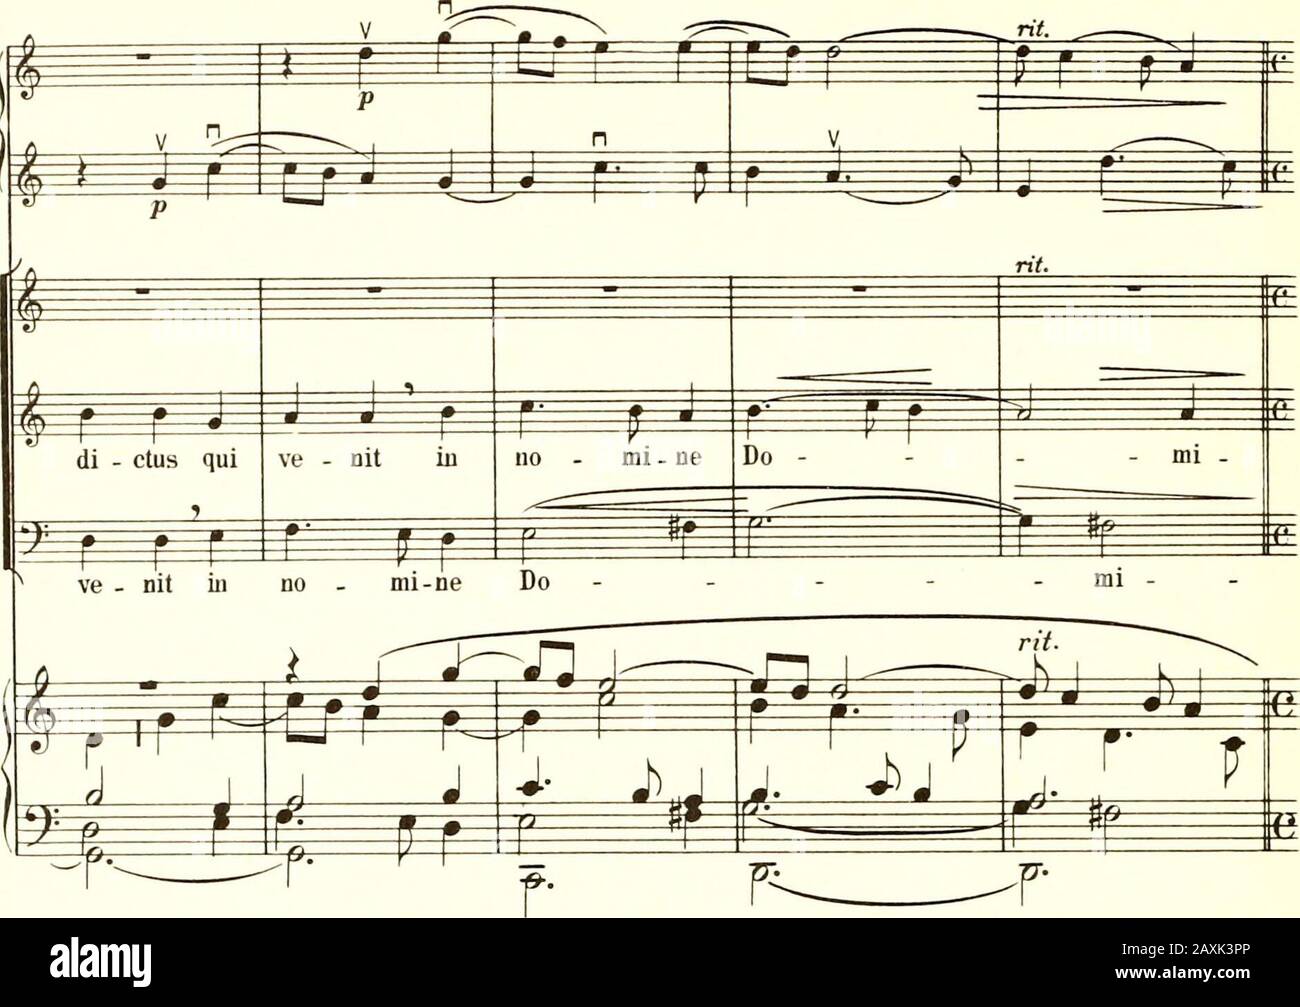 Studenten-Messe : für Knabenstimme, Tenor, Bass, Orgel und 2 Violinen; für den Praktischen Liturgischen Chorgebrauch eingerichtet von Alfons Schlögl . Larghetto. £ s? s E, ; • ? p &lt;f I s J. Ju A i f r -p f^ r Ped. 0Mm © m^ ^m ^^ i =m m ^^ j nJ. j §6 Do i ni.P m ^mm ^ mi m, be - ne - r r ir r j  m TT^ ^a ±E^ ® Be - ne - di - ctus qui #N=j i P =p=*f ^? ^- ^j f= I J 2 3 i pj g r r ^ r r- v- U. E. 4957. 46. Allegro, quasi alla breve m ^m ?)V £ ^¥¥ 3== »r / & r r- £Eg «sf E^ Stock Photo